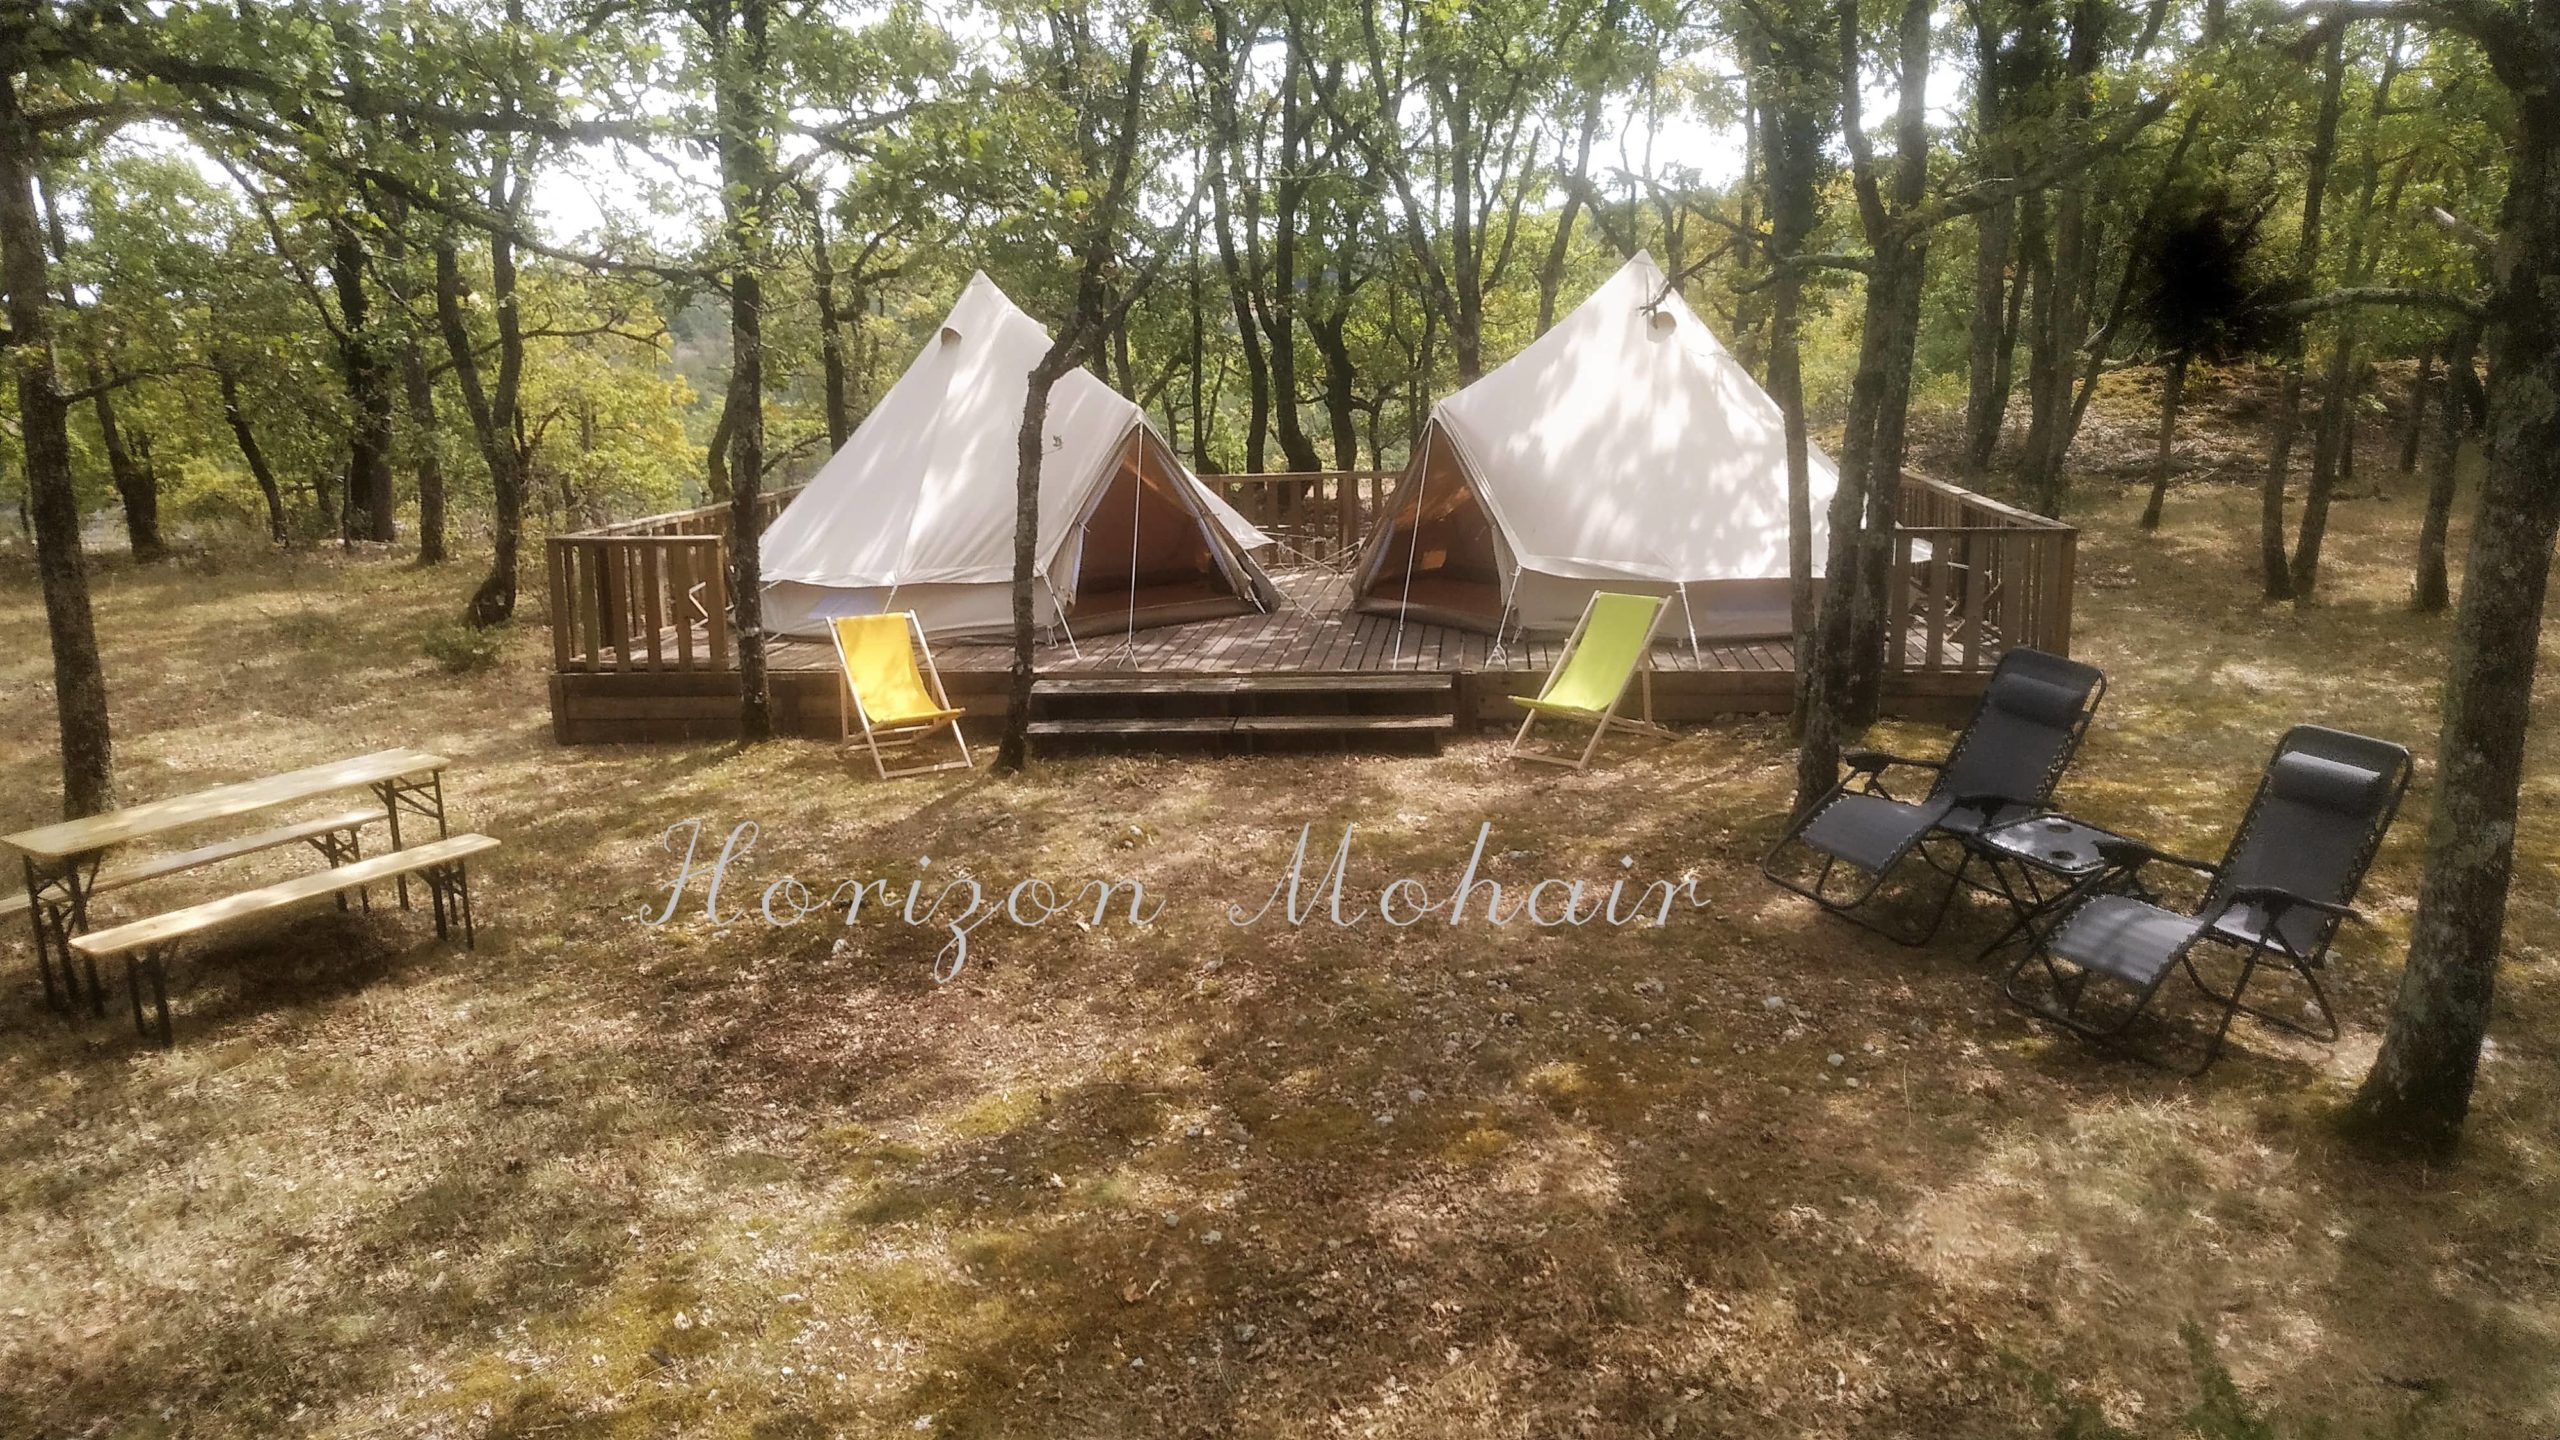 Le Camping Horizon Mohair rejoint le réseau Bienvenue à la Ferme !